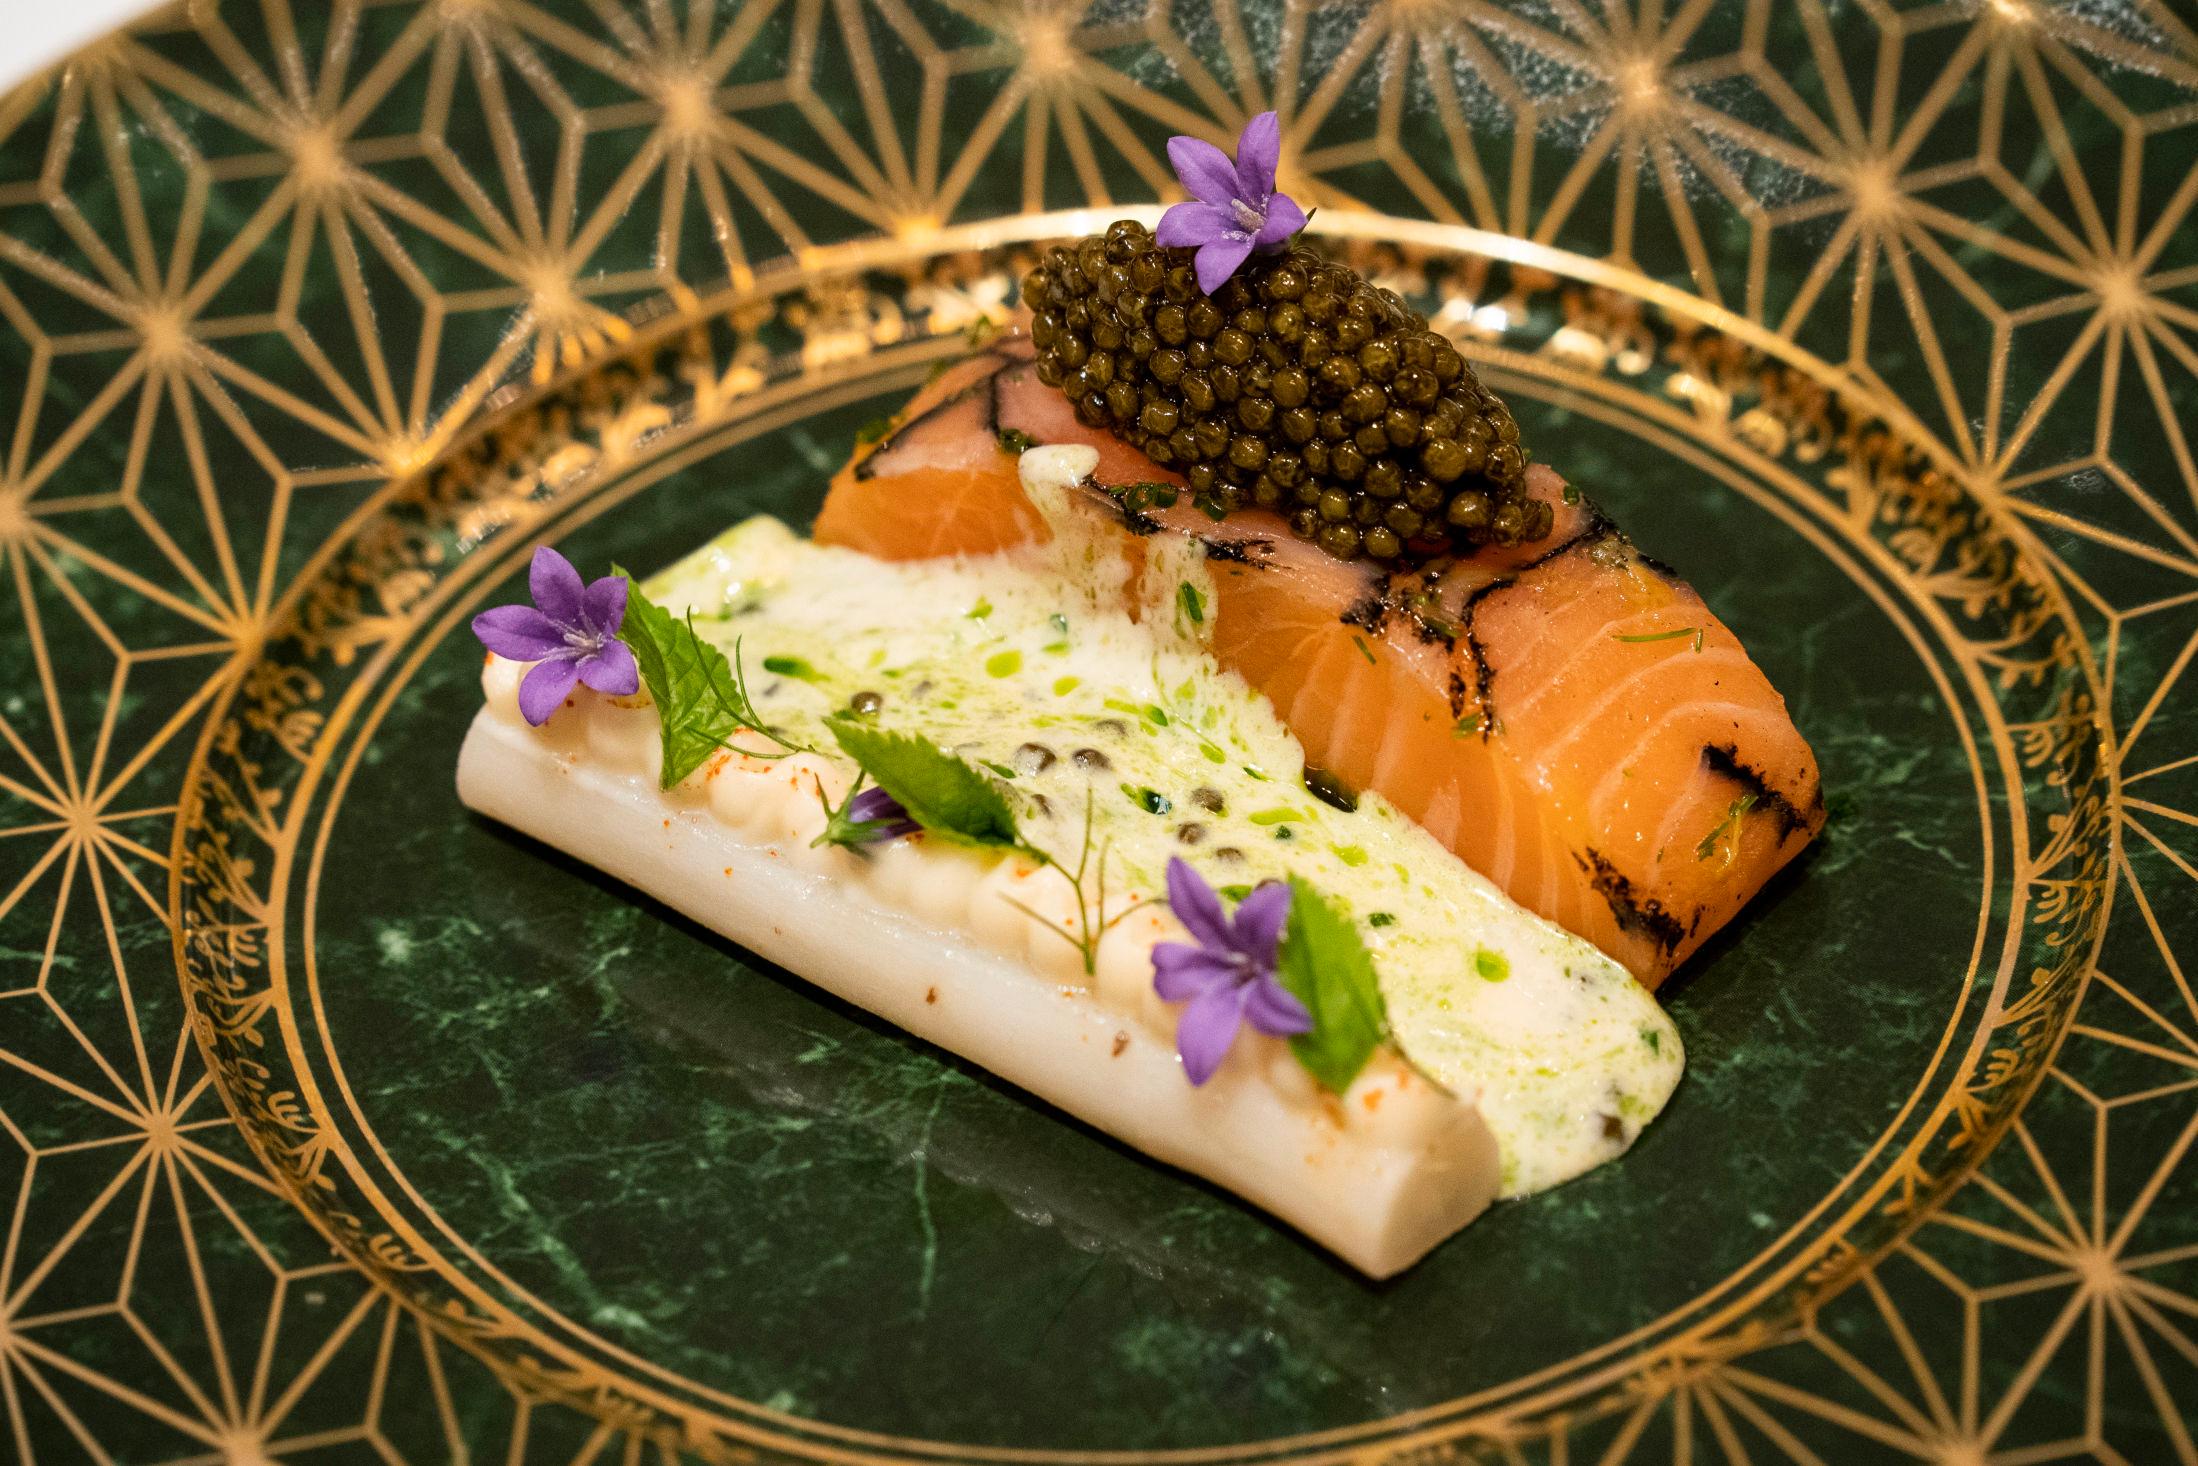 FORNØYD: Laksen har en silkeglatt tekstur, og aspargesen er perfekt tilberedt, sier anmelderen. Foto: Ole Martin Wold/VG